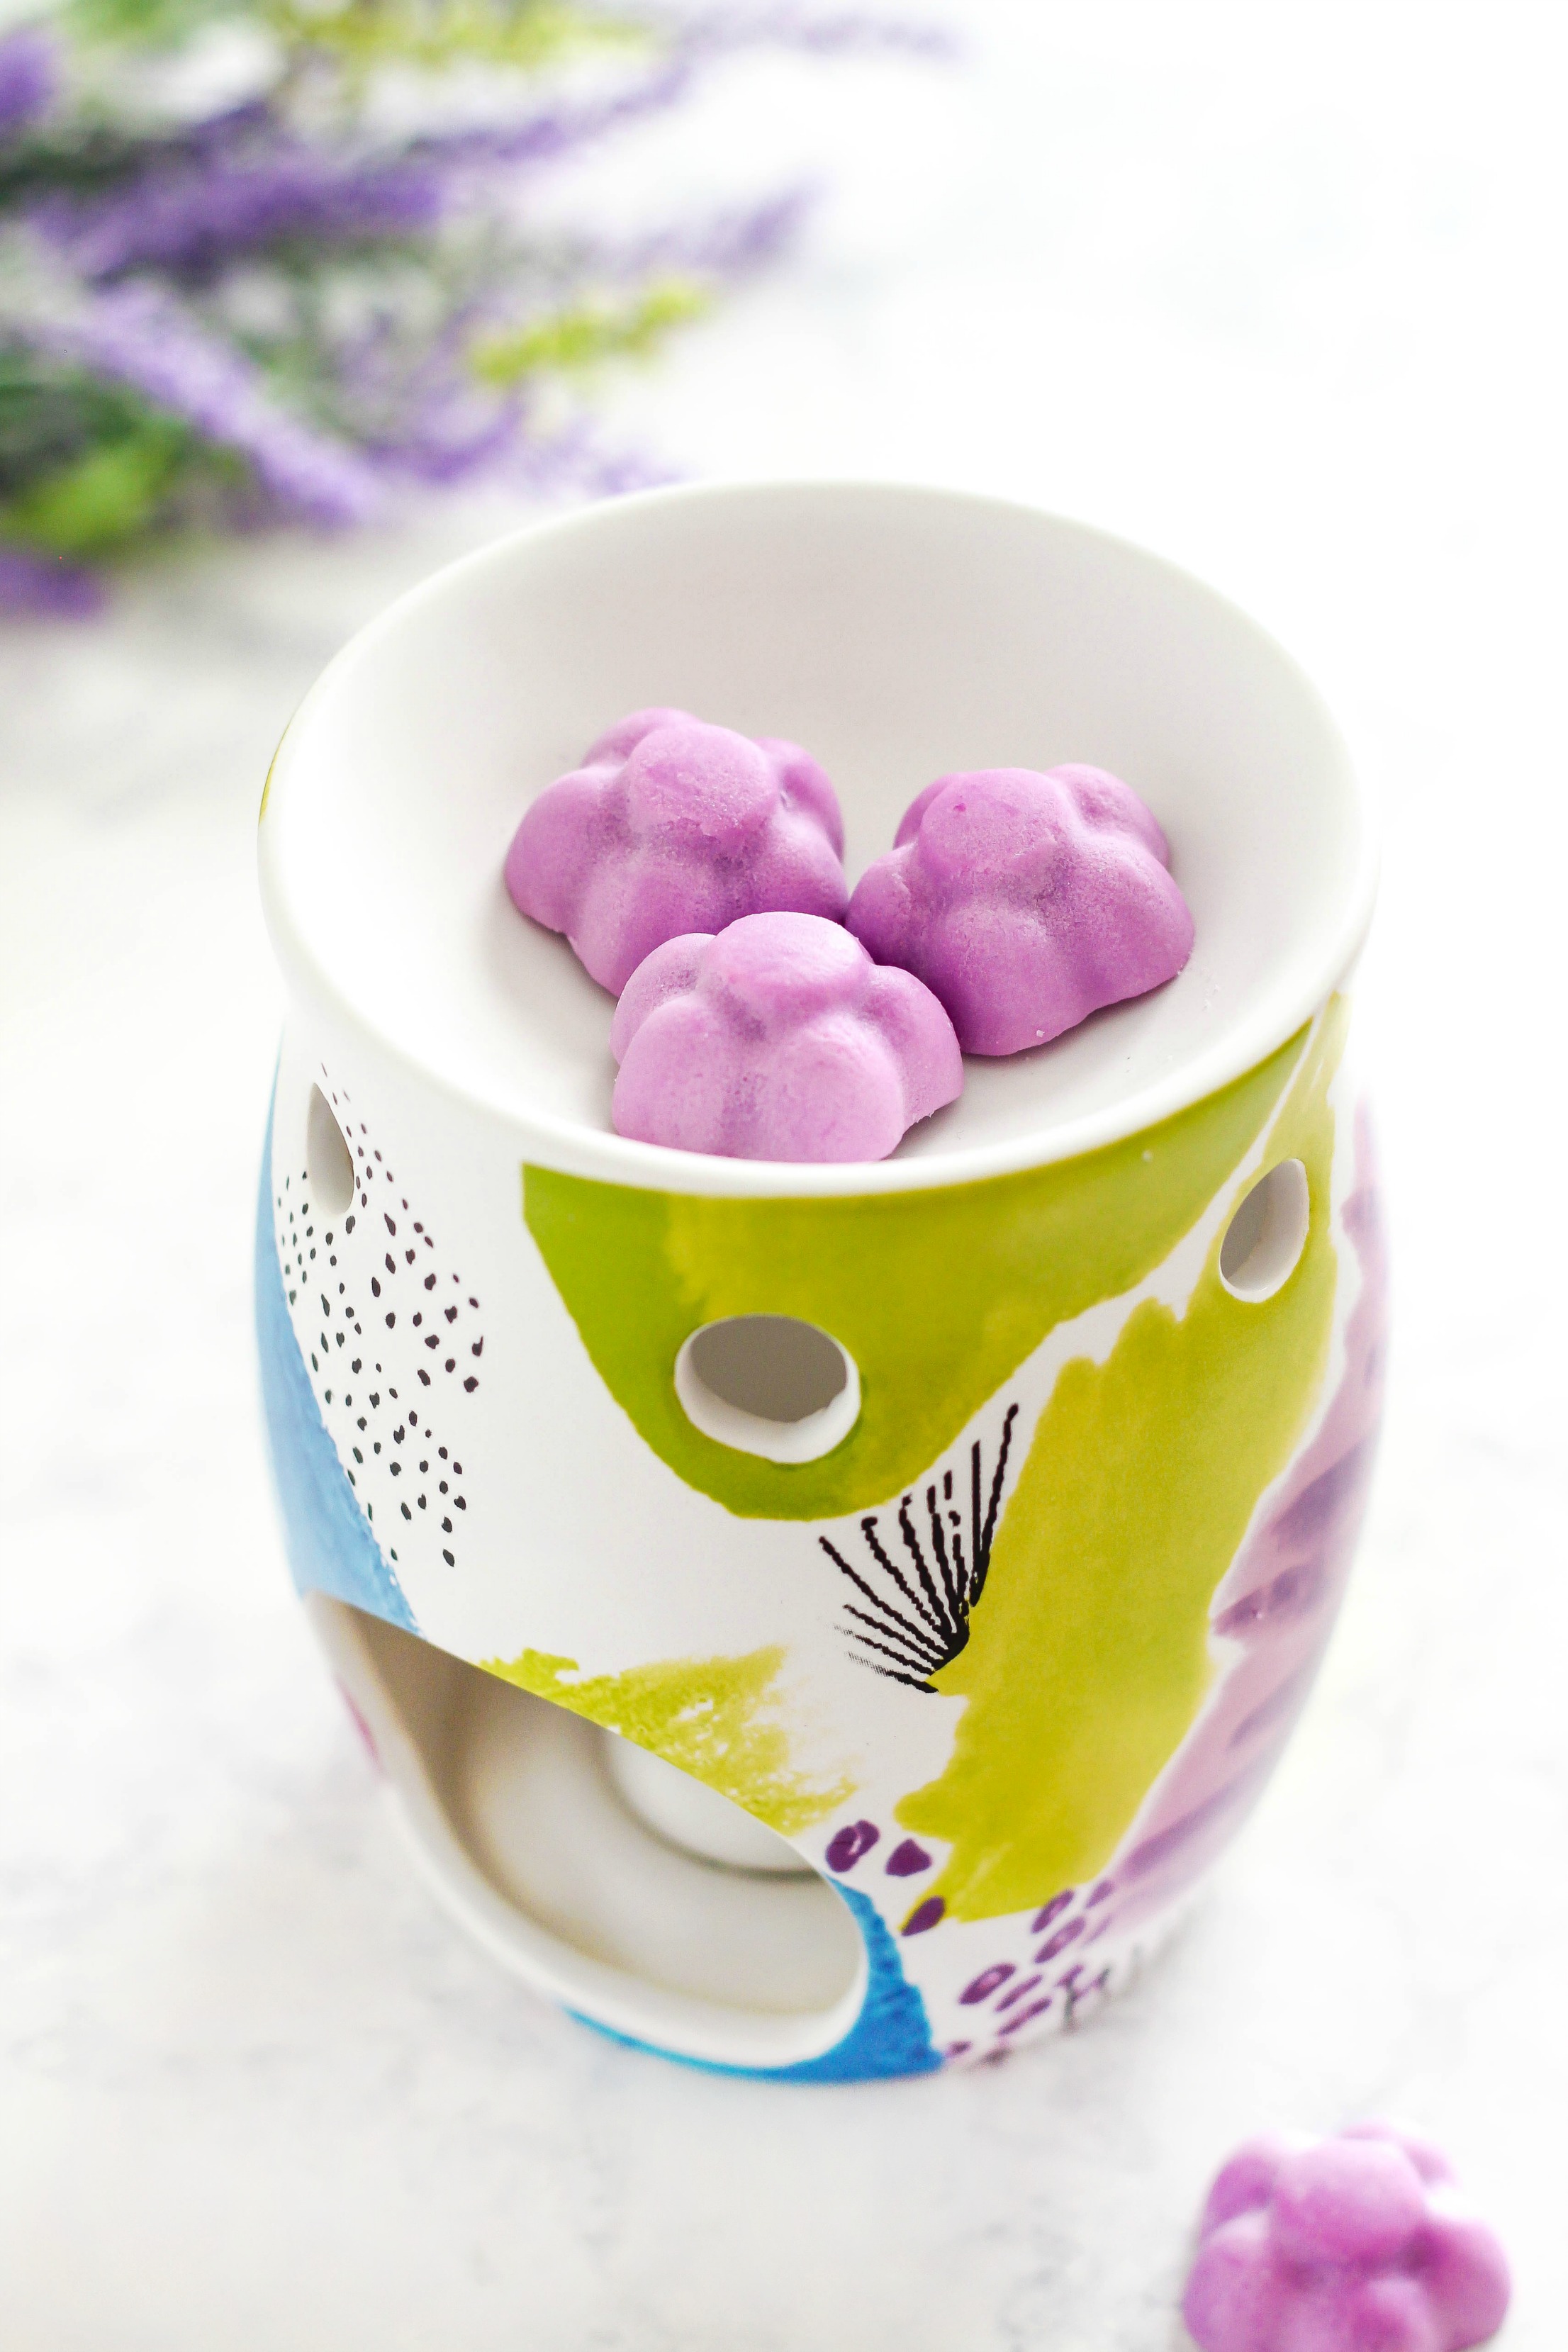 DIY lavender soy wax melts shaped as flowers (via www.purelykatie.com)